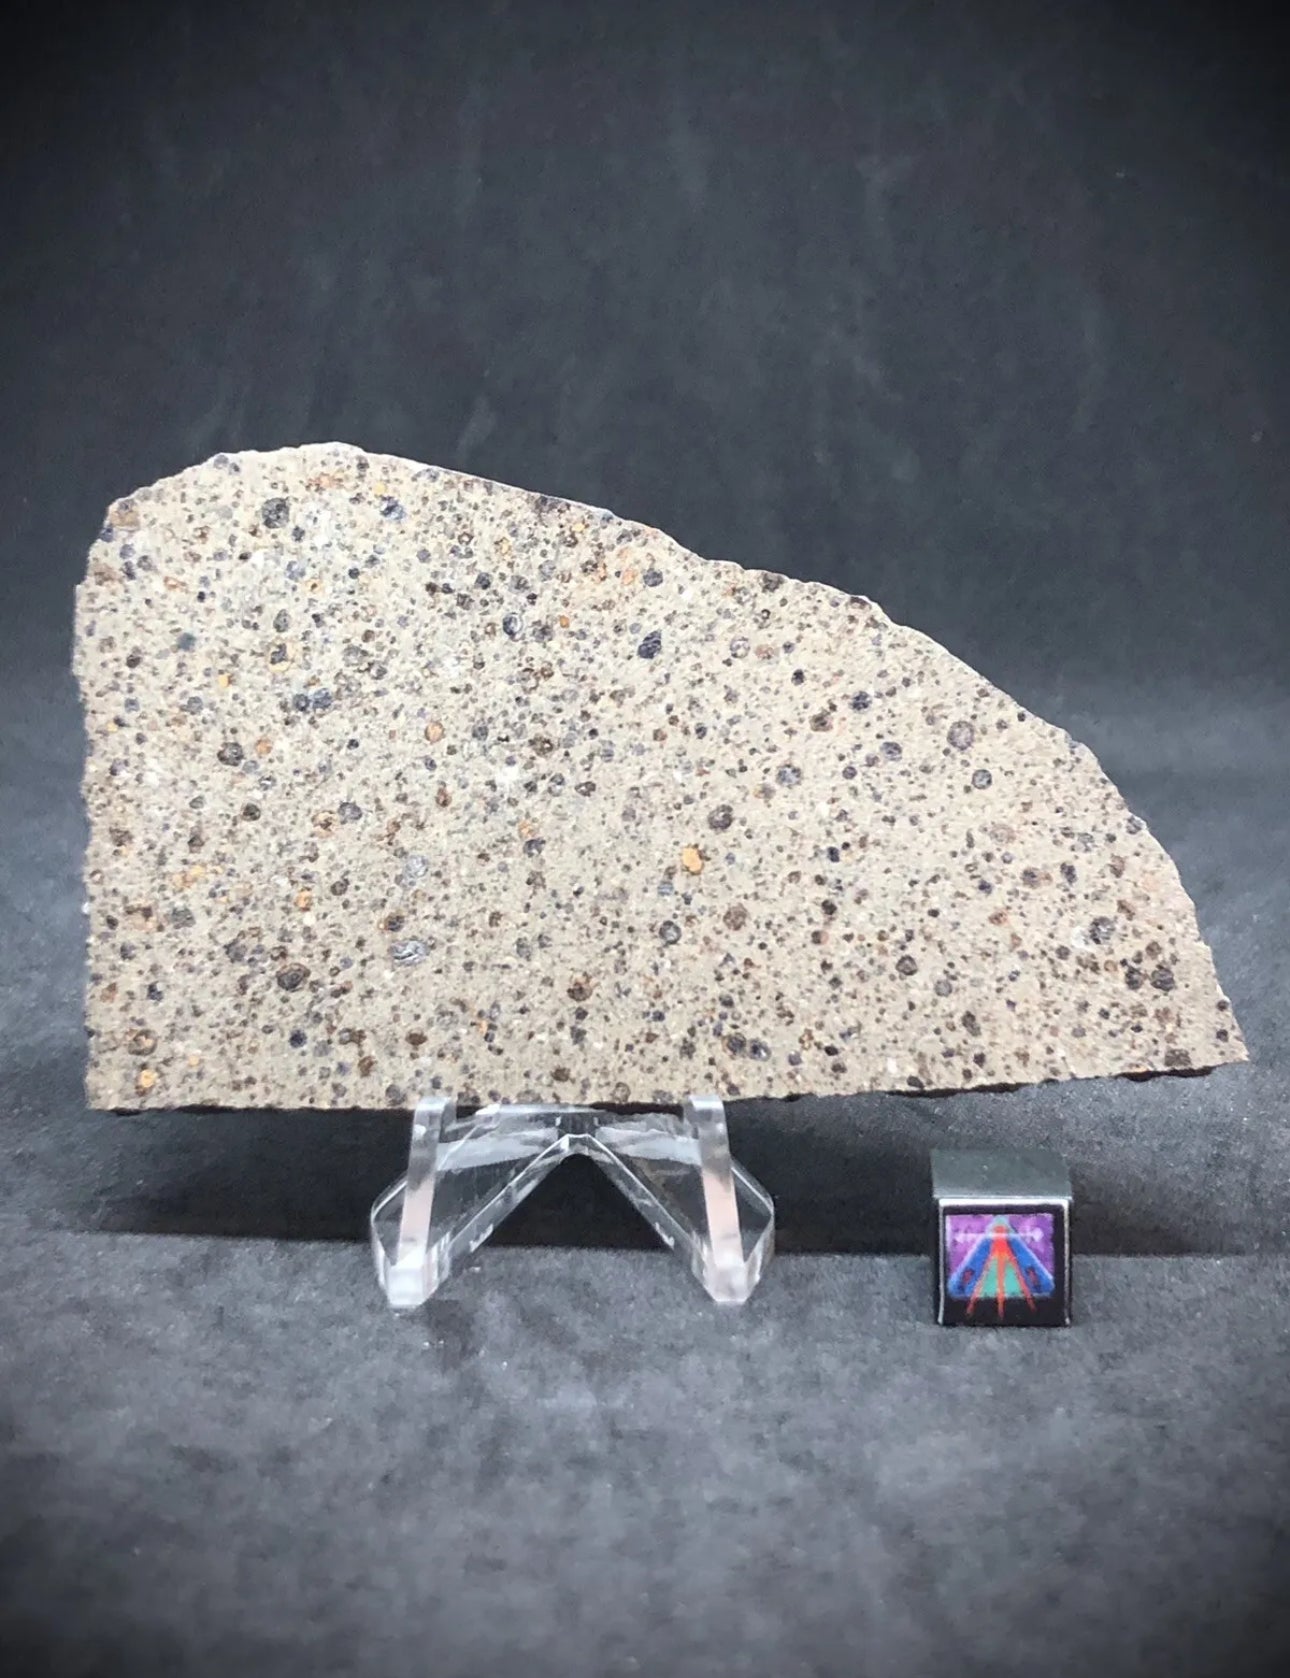 NWA 16314 28.4g Carbonaceous Chondrite - CK5 Meteorite